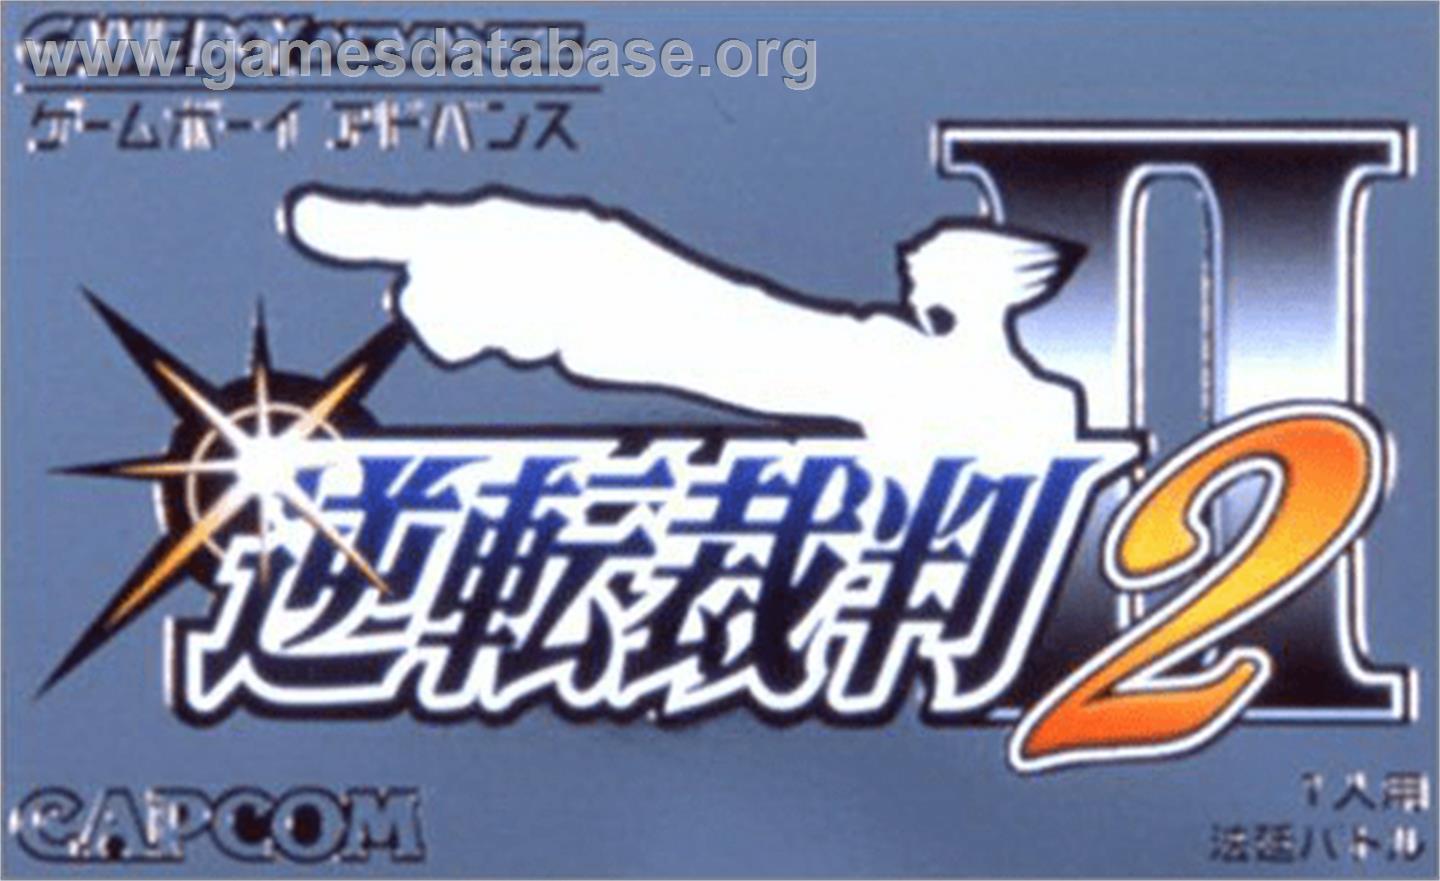 Gyakuten Saiban 2 - Nintendo Game Boy Advance - Artwork - Box